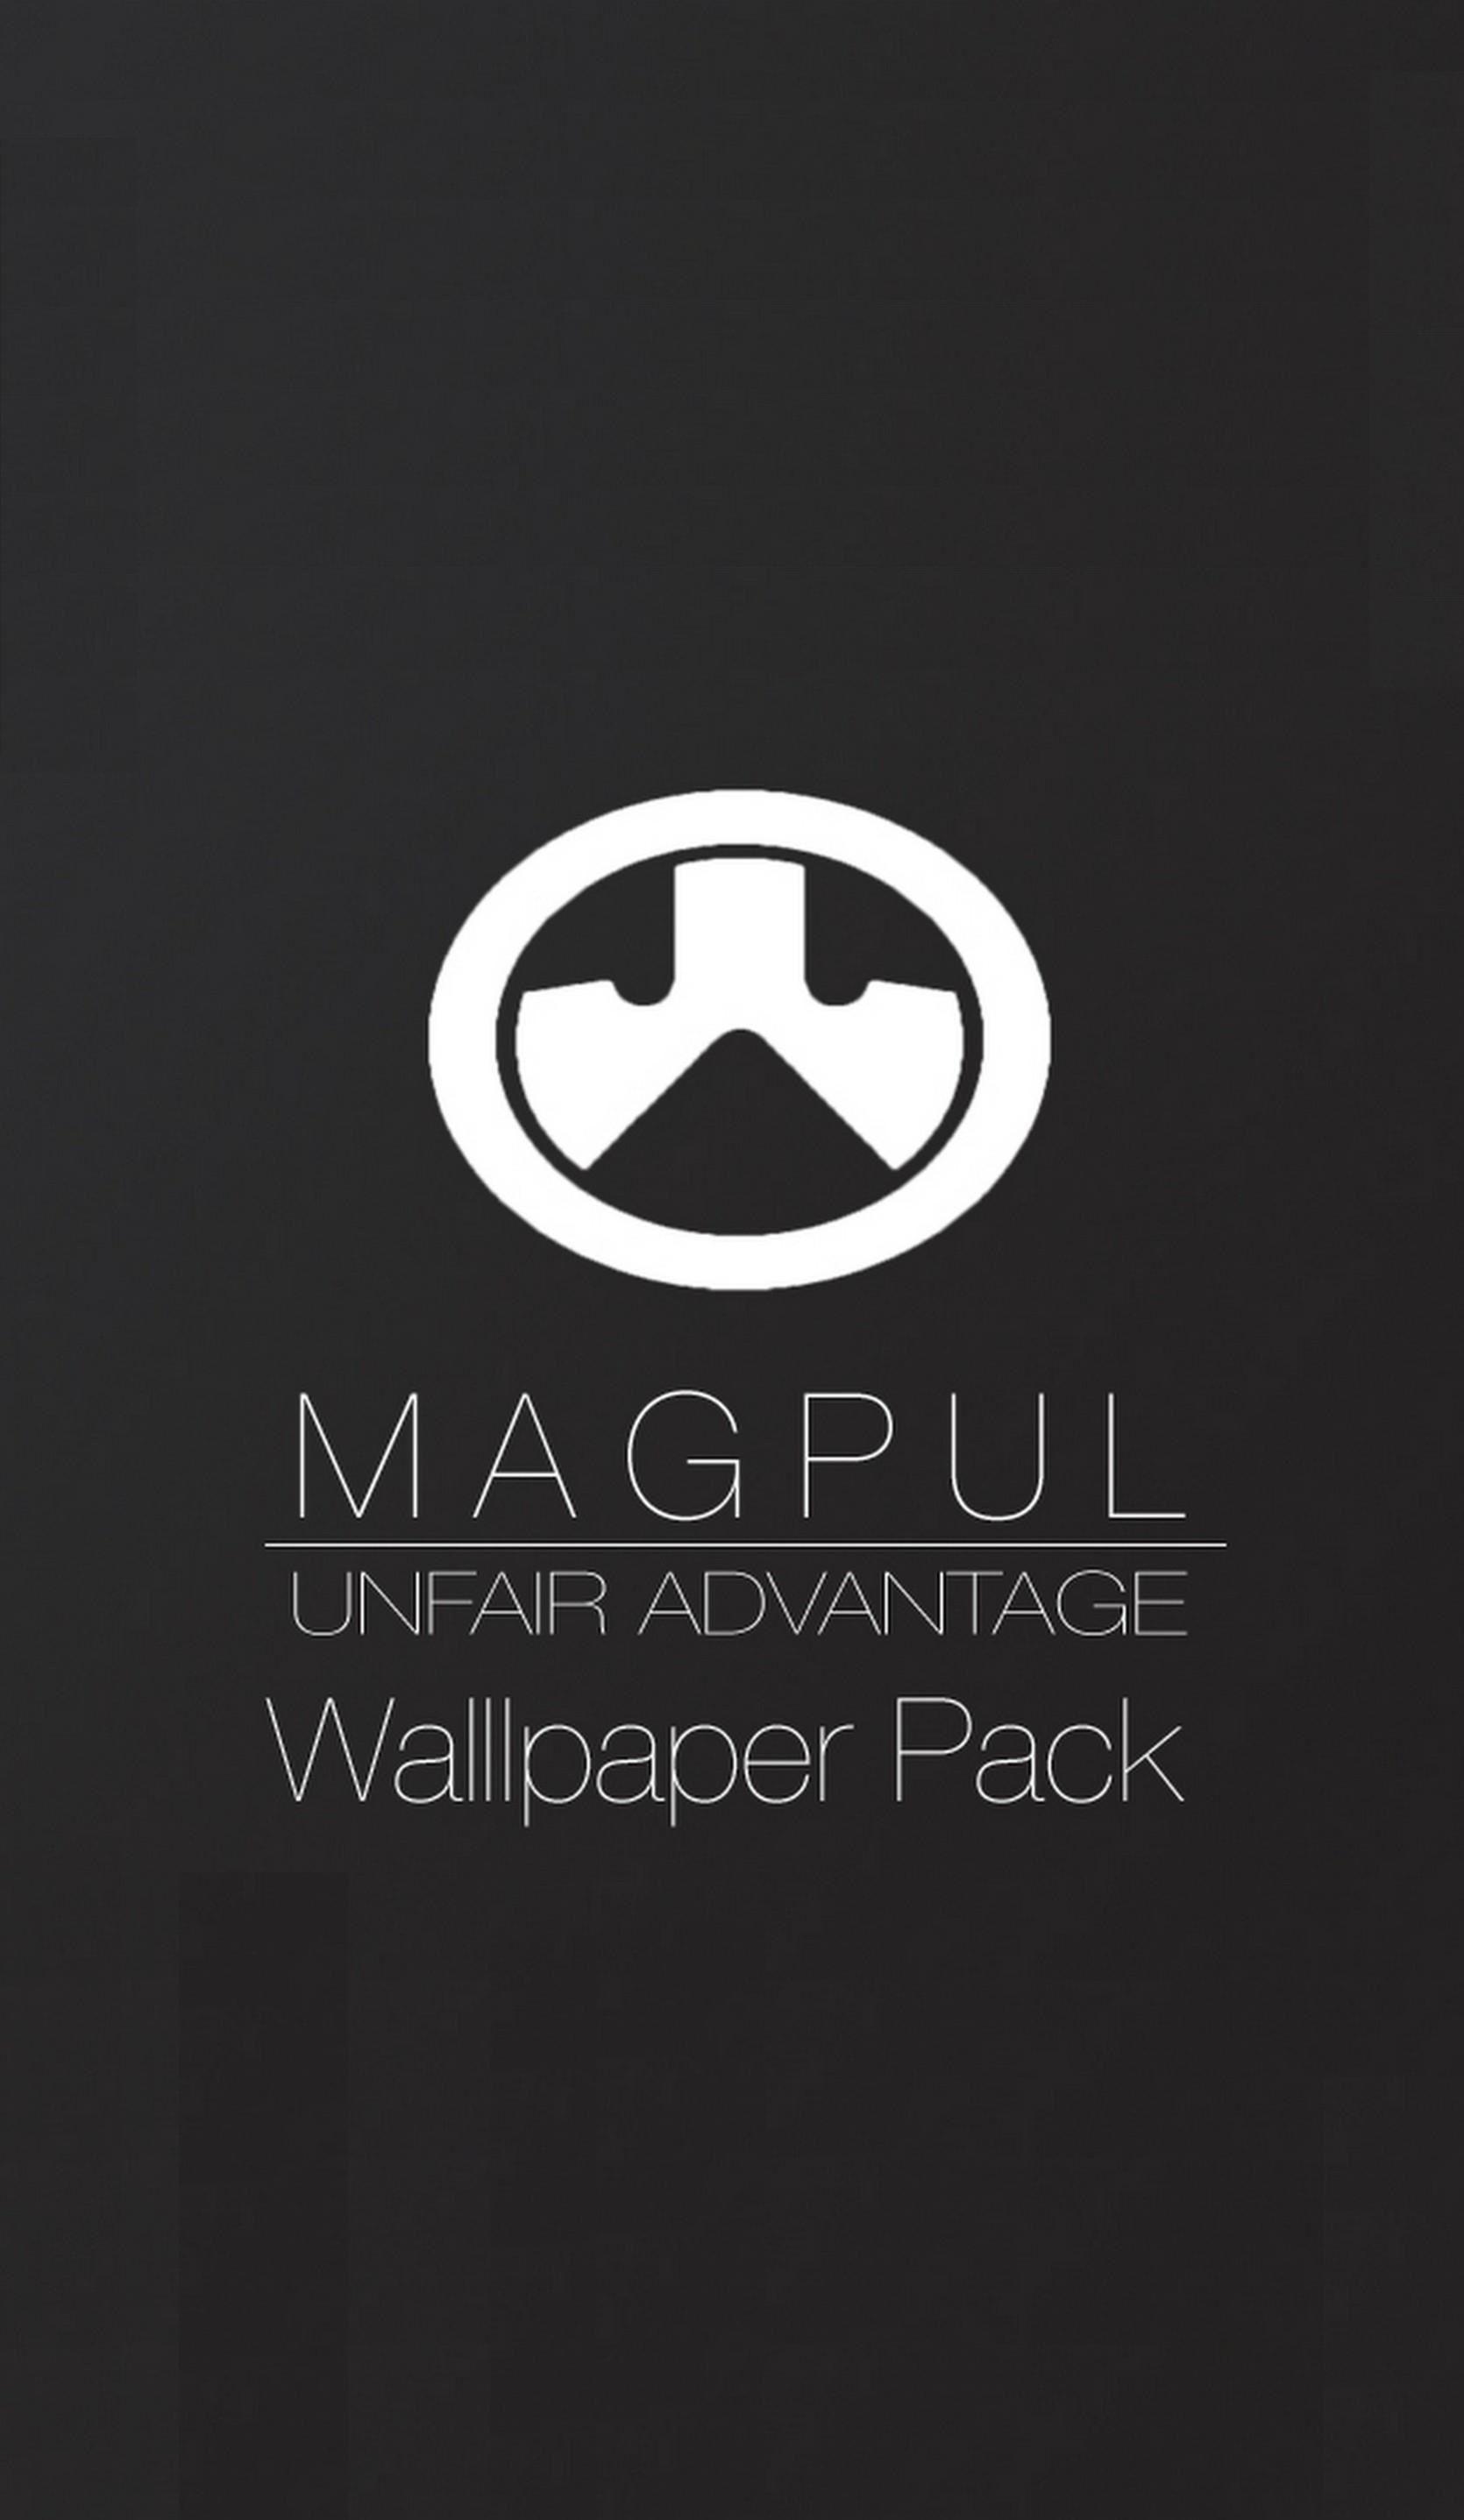 magpul wallpaper